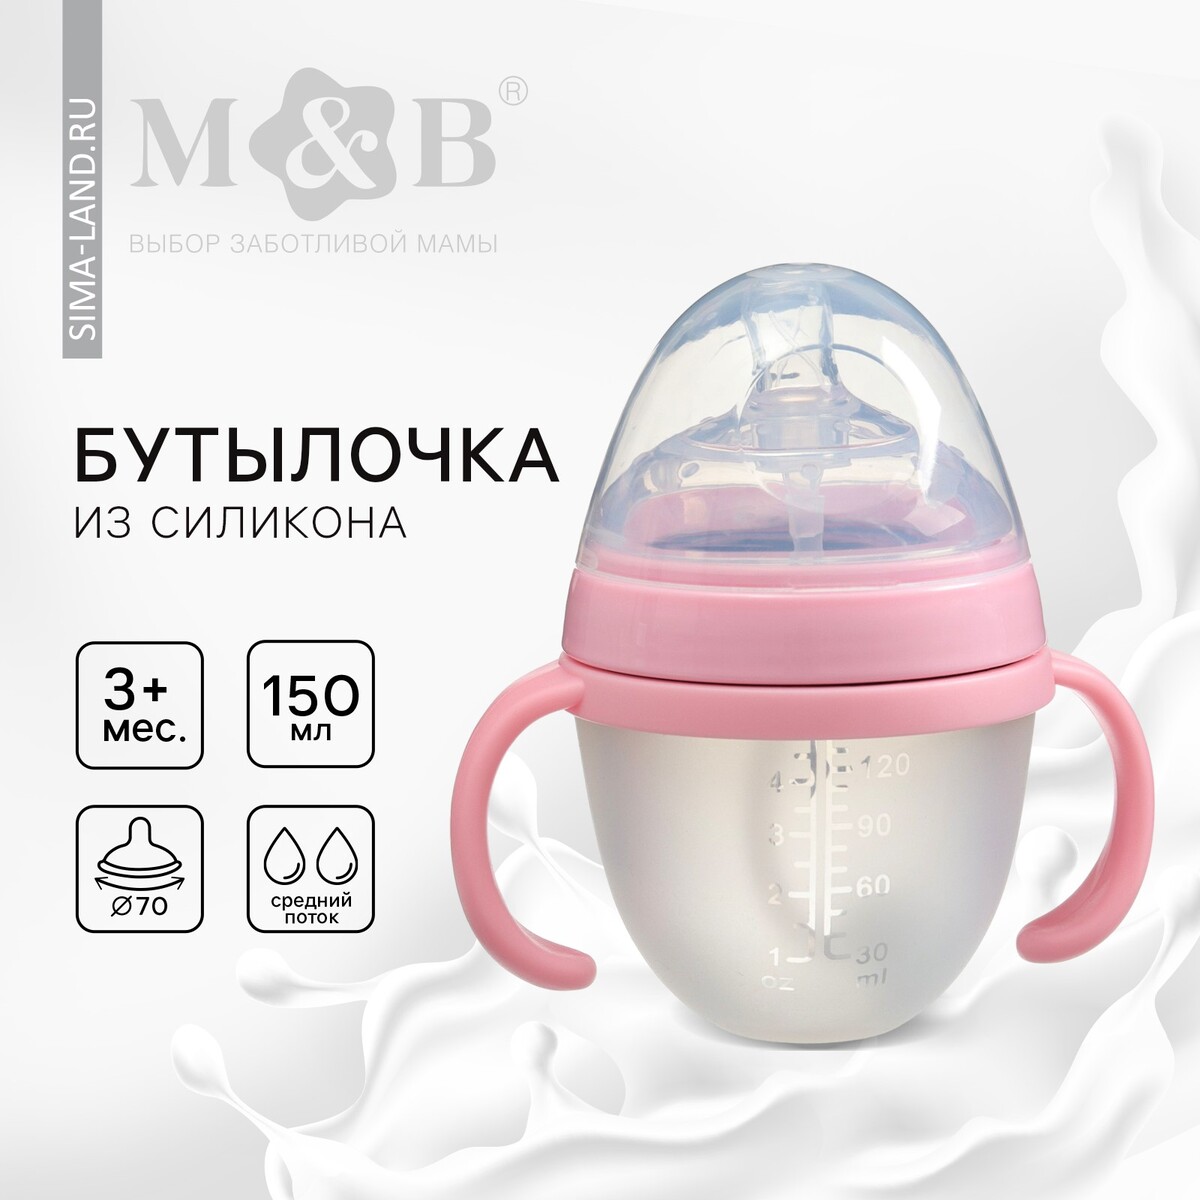 Бутылочка для кормления m&b, шг ø70мм, 150мл., с ручками, силиконовая колба, цвет розовый Mum&Baby